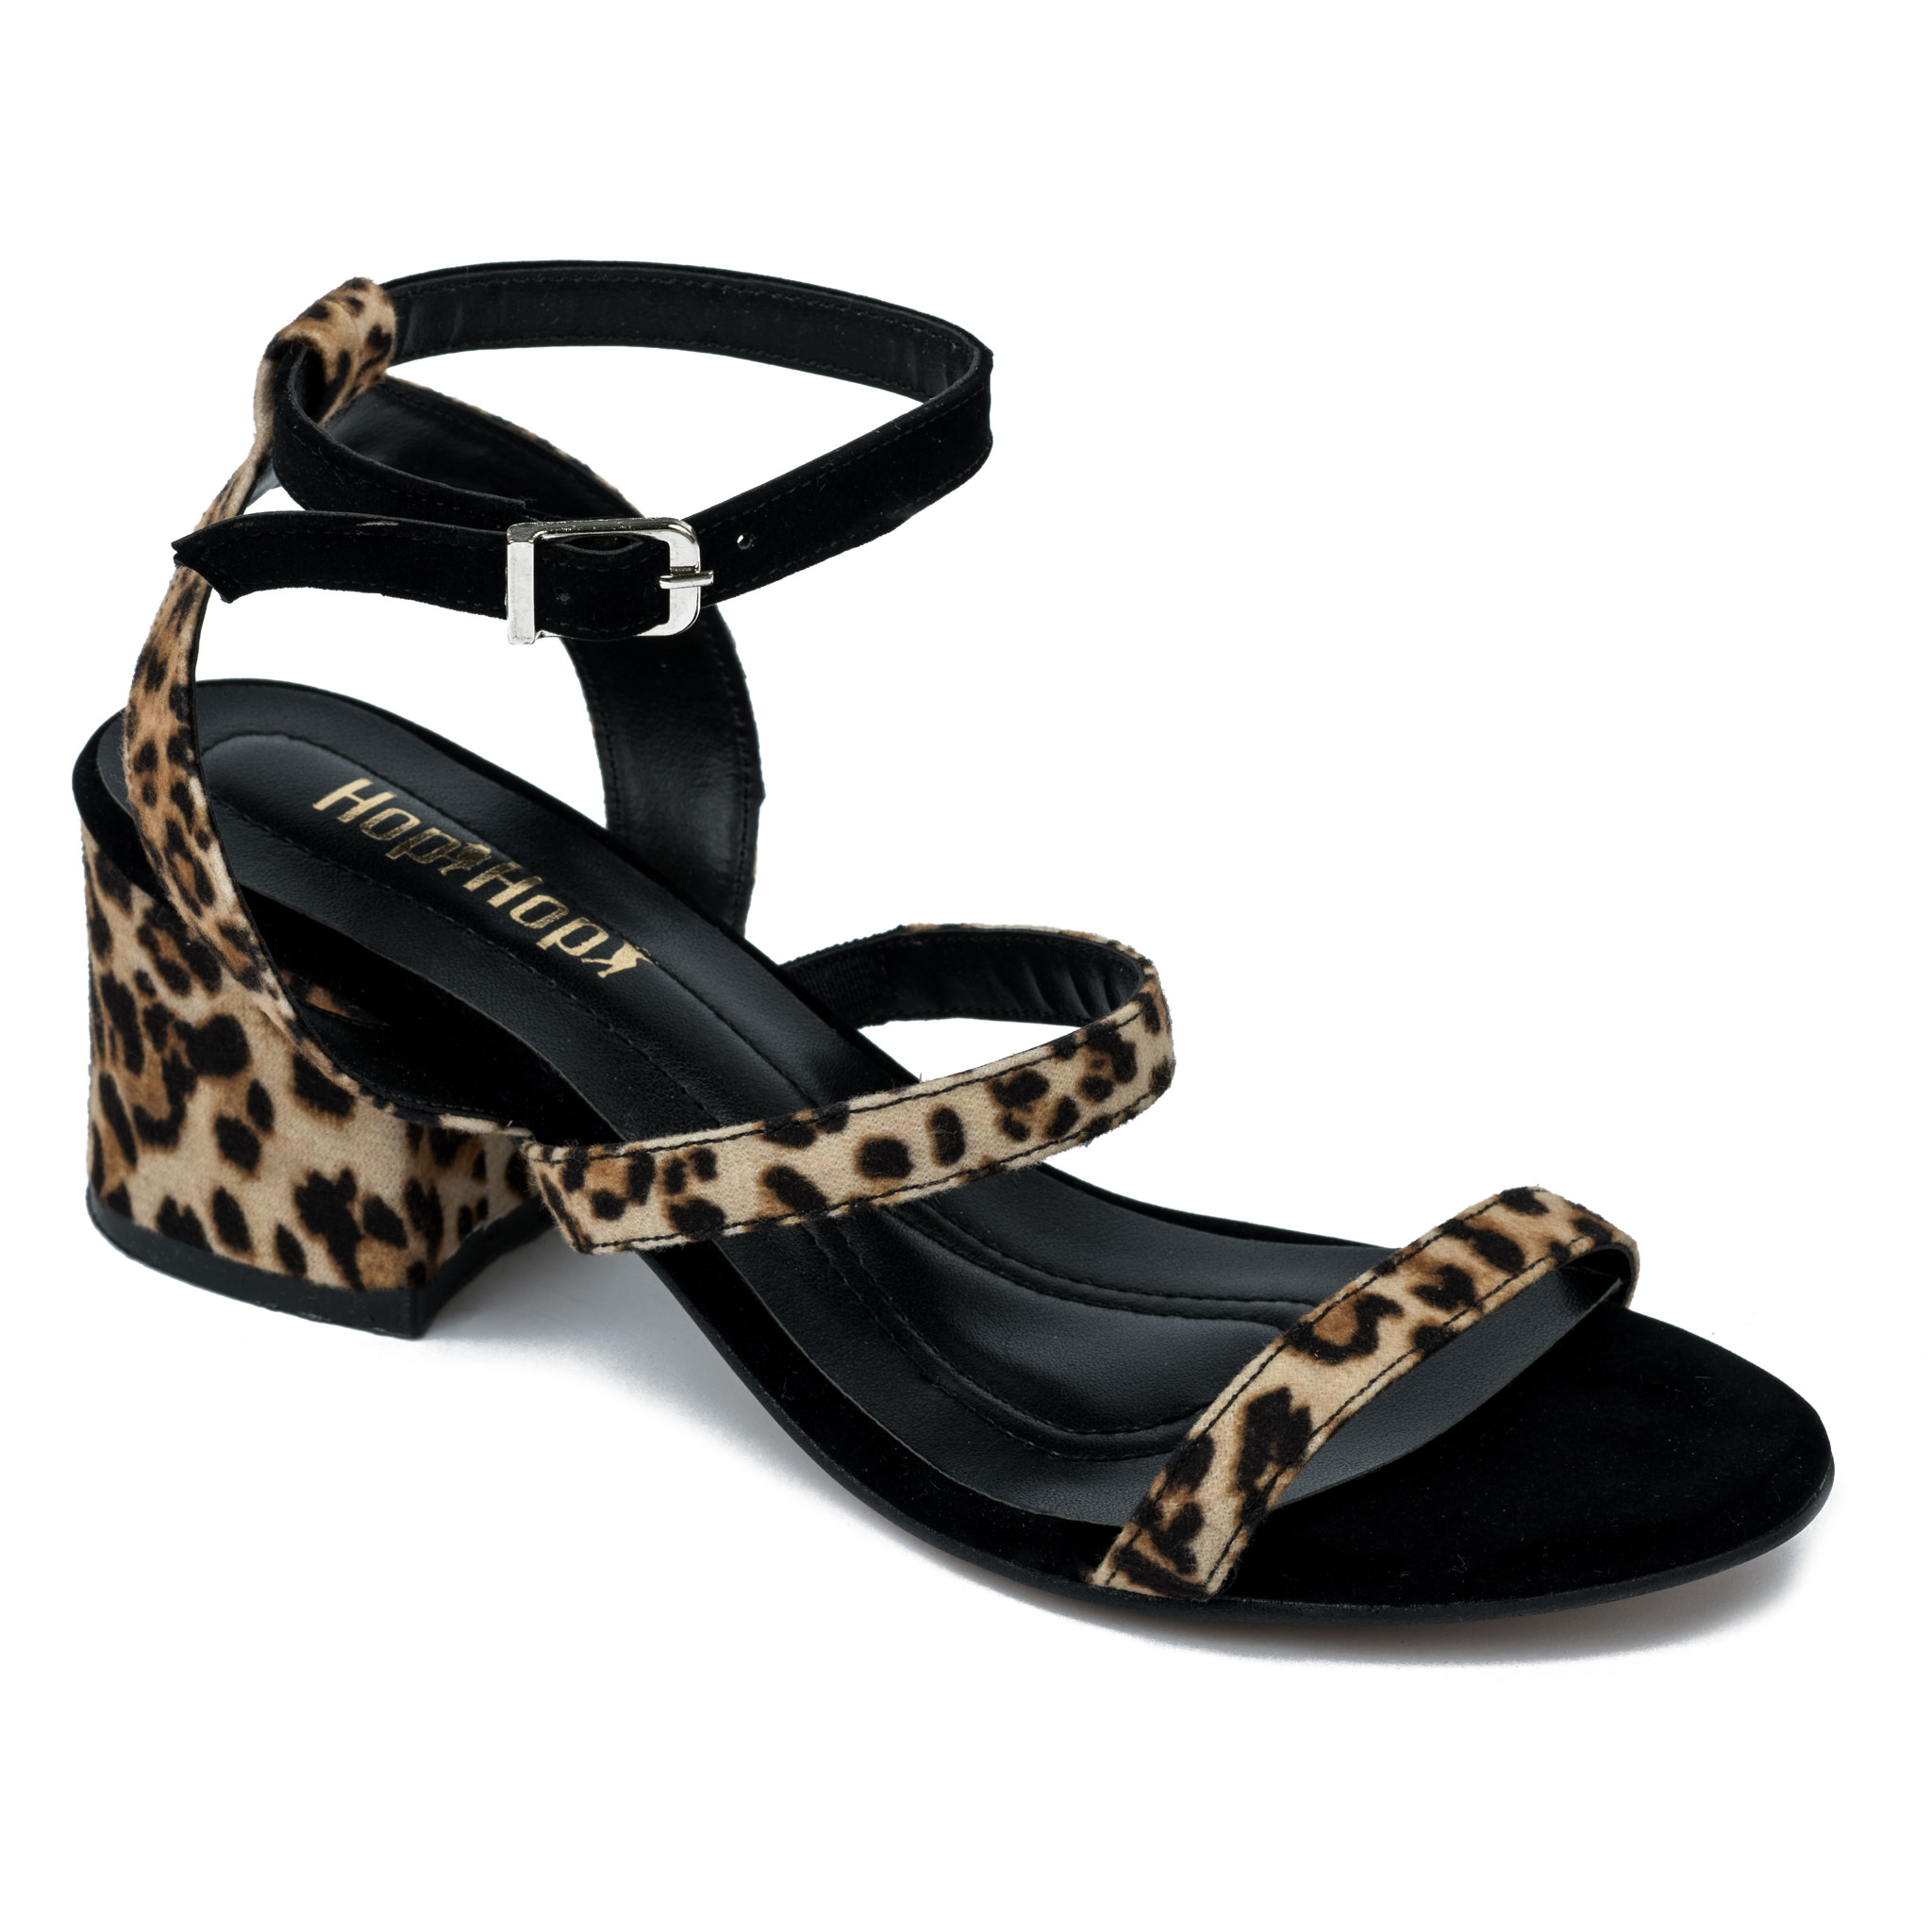 Women sandals A456 - LEOPARD